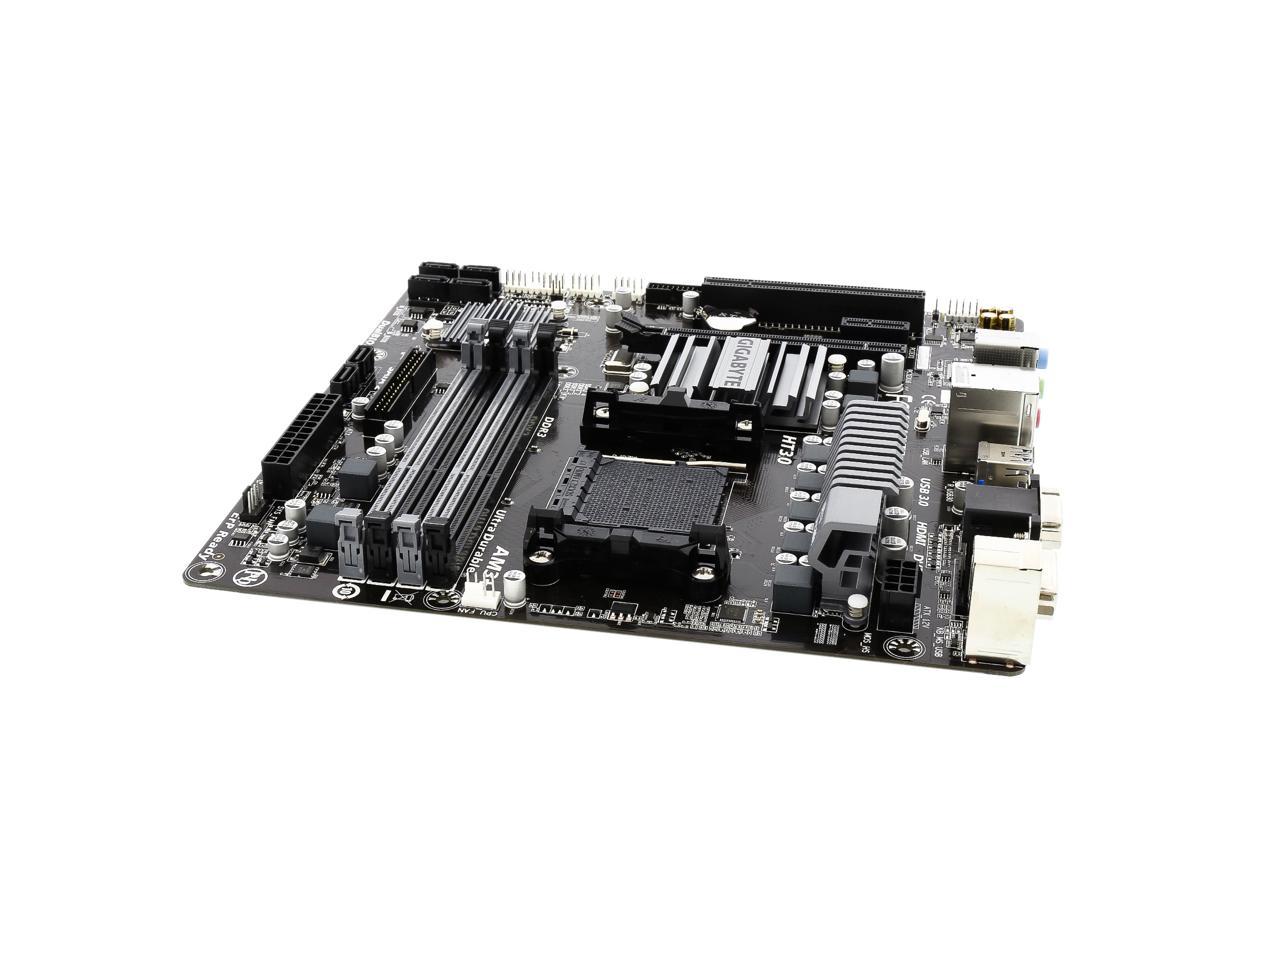 GIGABYTE GA-78LMT-USB3 (rev. 6.0) AM3+/AM3 Micro ATX AMD Motherboard